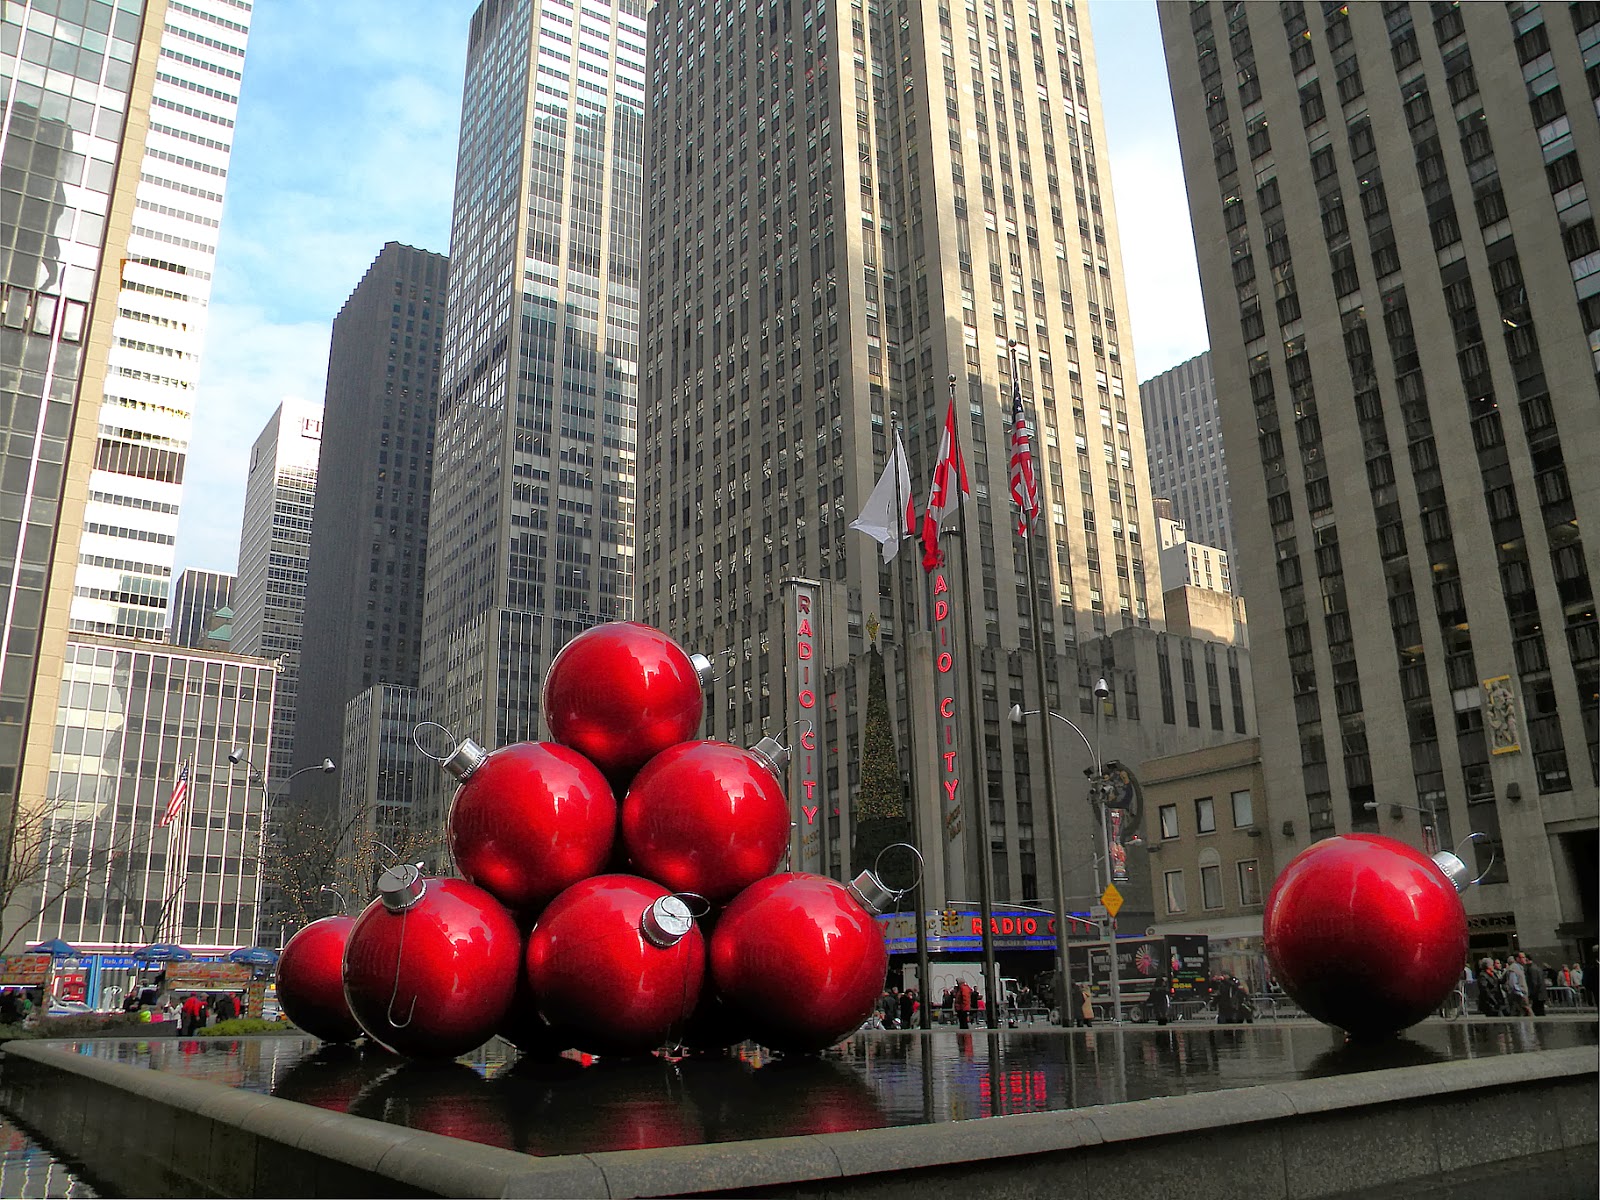 Christmas bulbs in New York City